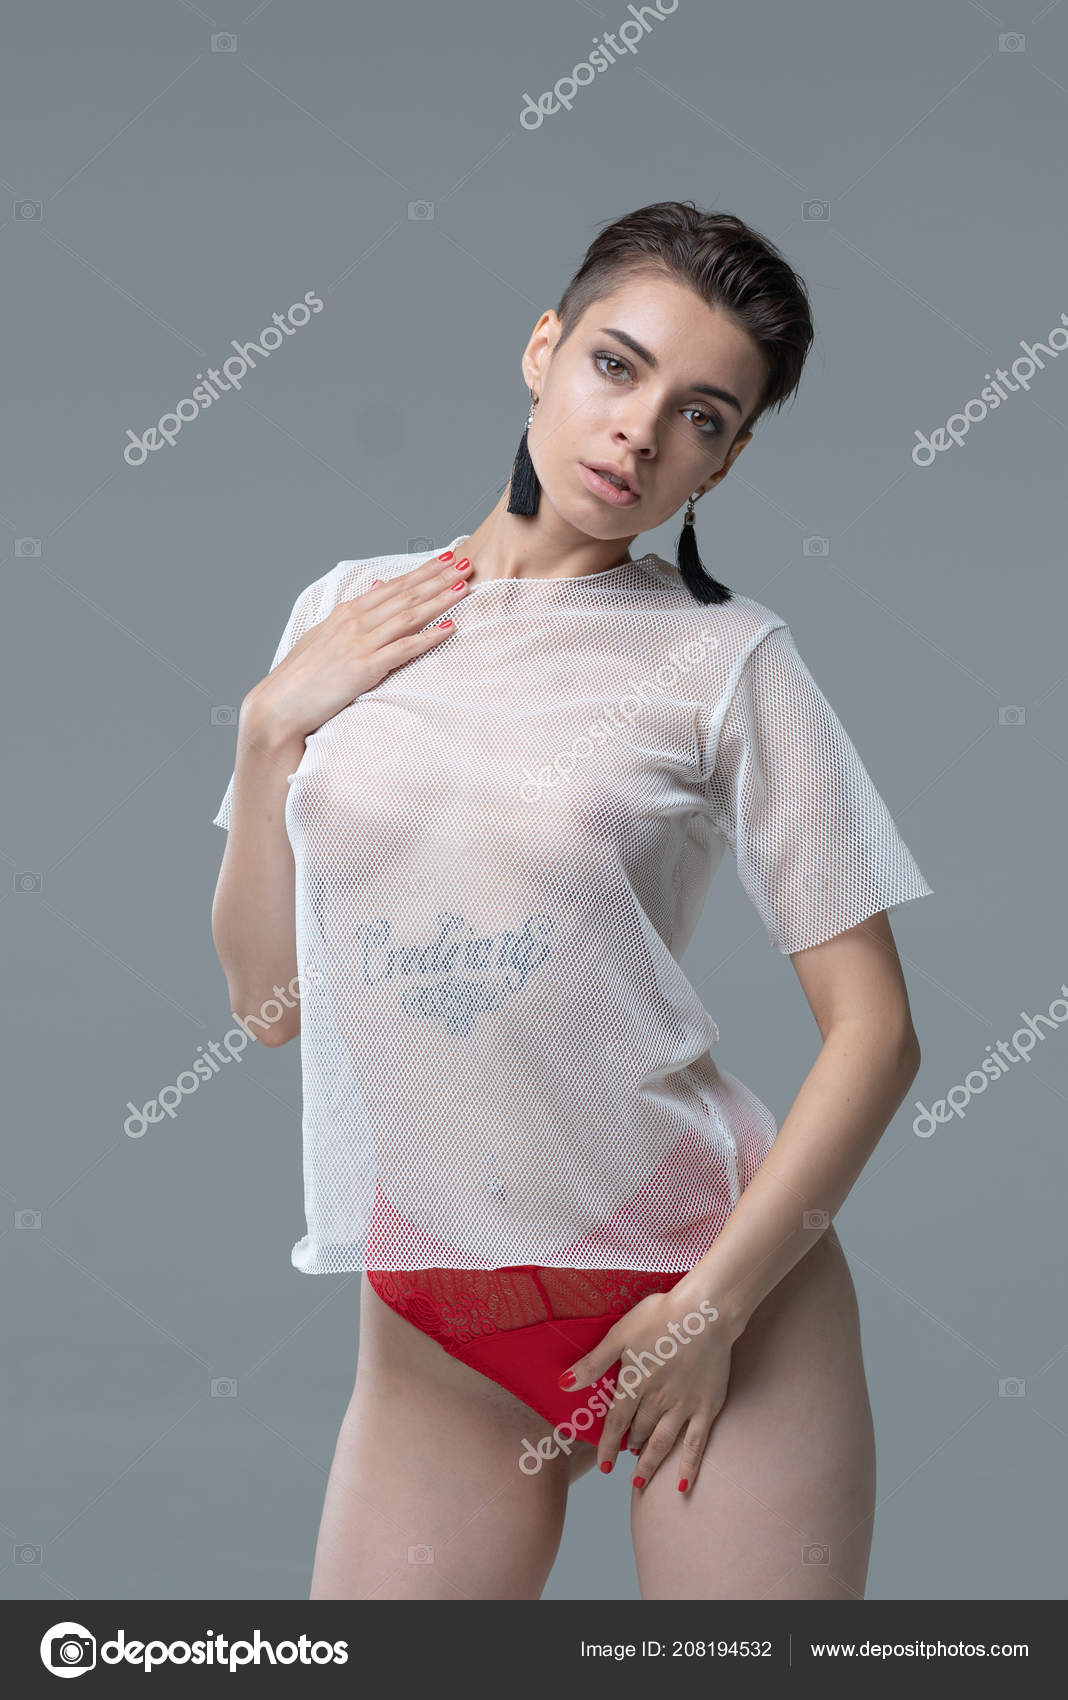 https://st4.depositphotos.com/10086424/20819/i/1600/depositphotos_208194532-stock-photo-young-beautiful-girl-posing-studio.jpg